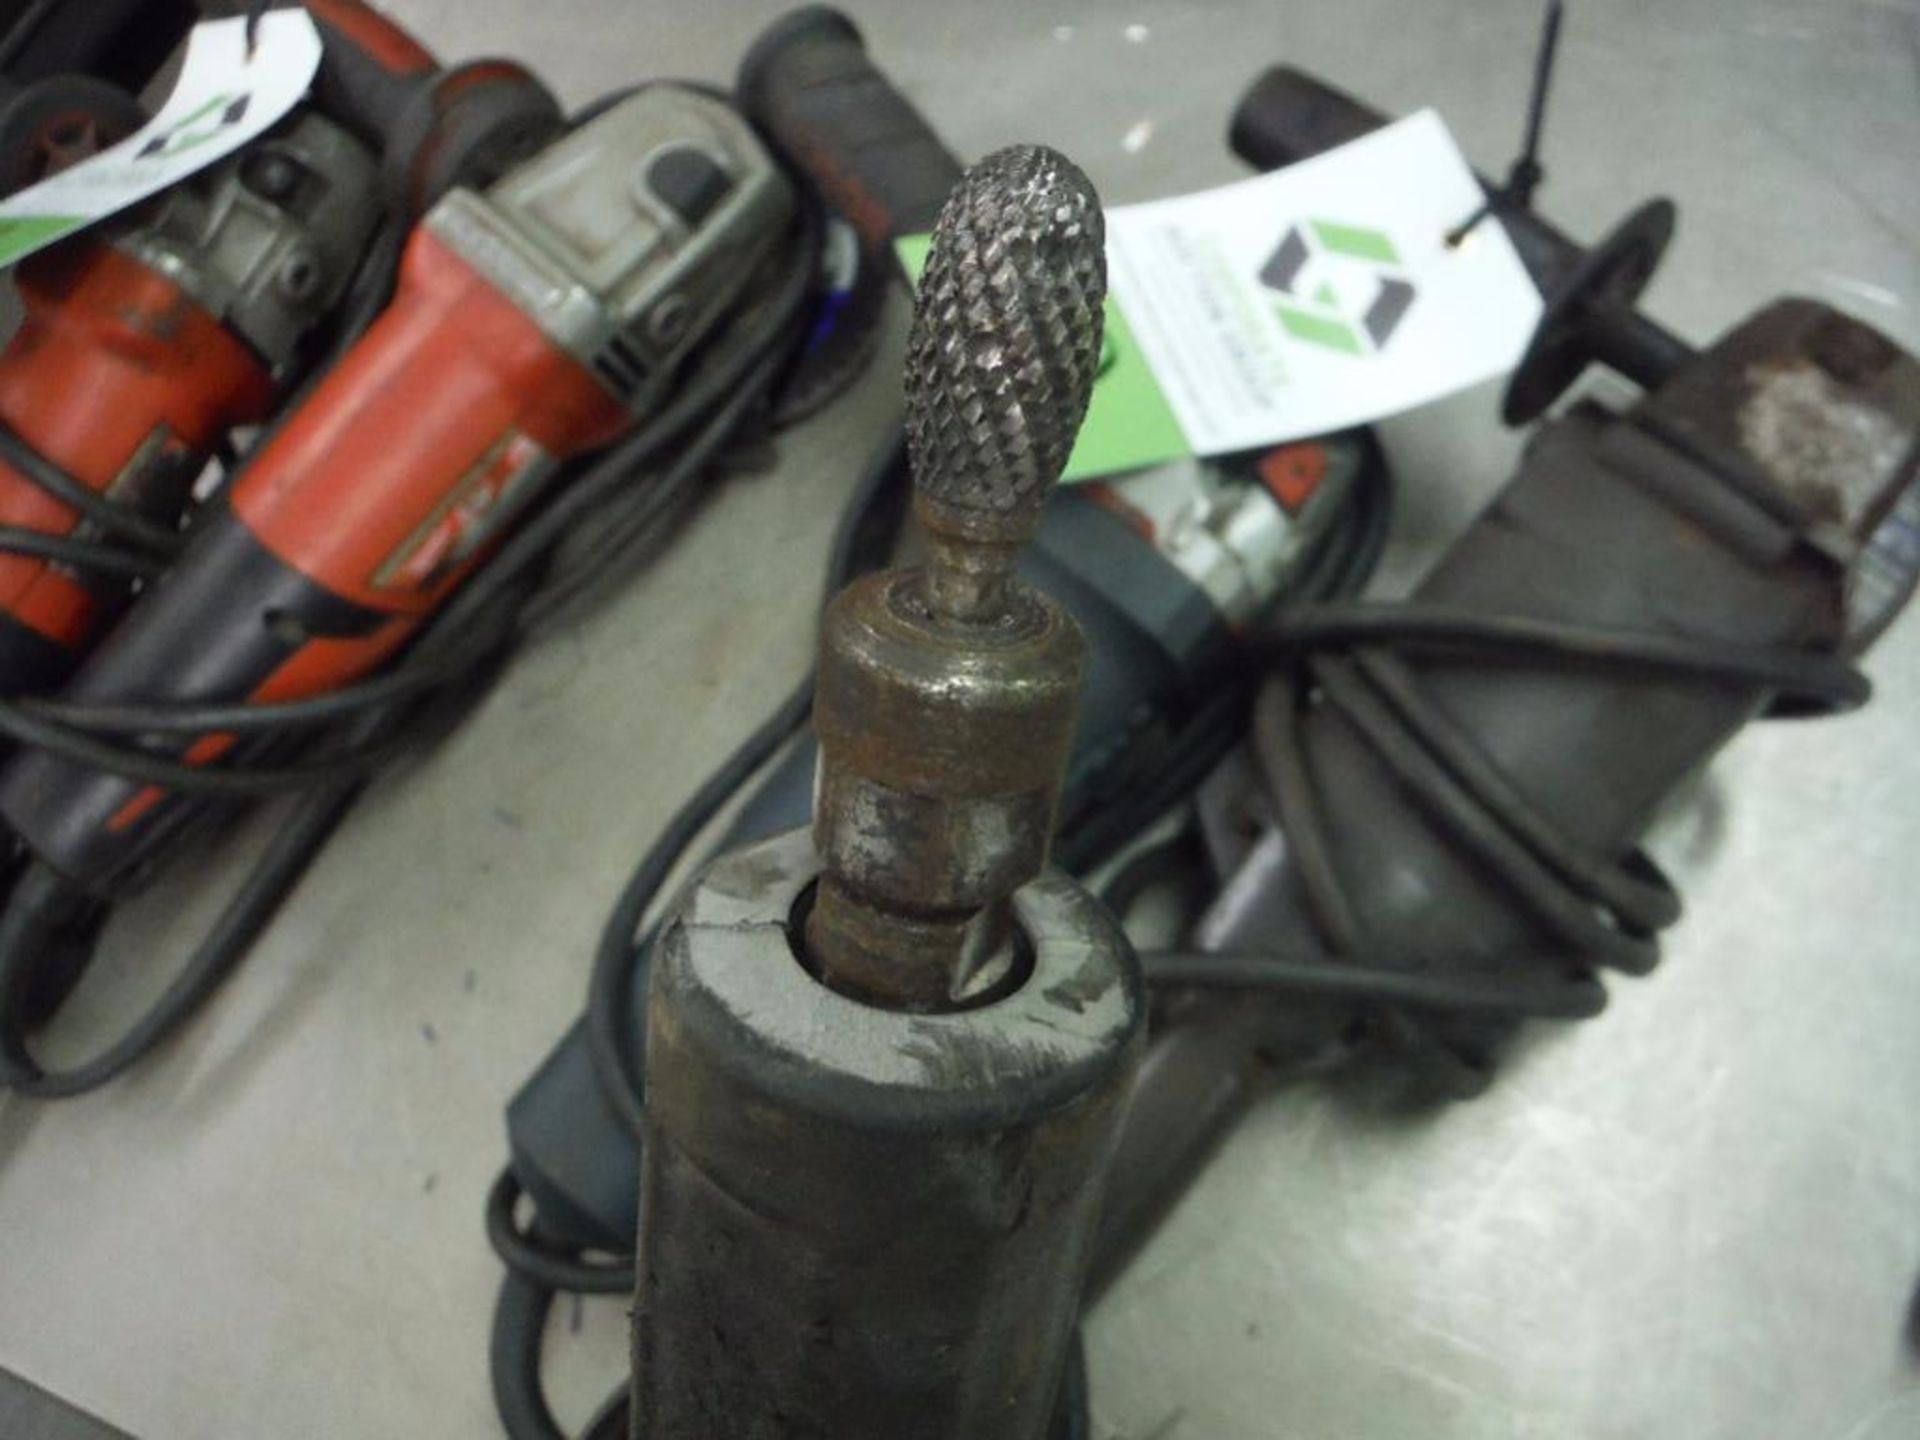 Bosch grinder, Black and Decker grinder, Dremel ** Rigging Fee: $5 ** - Image 3 of 7